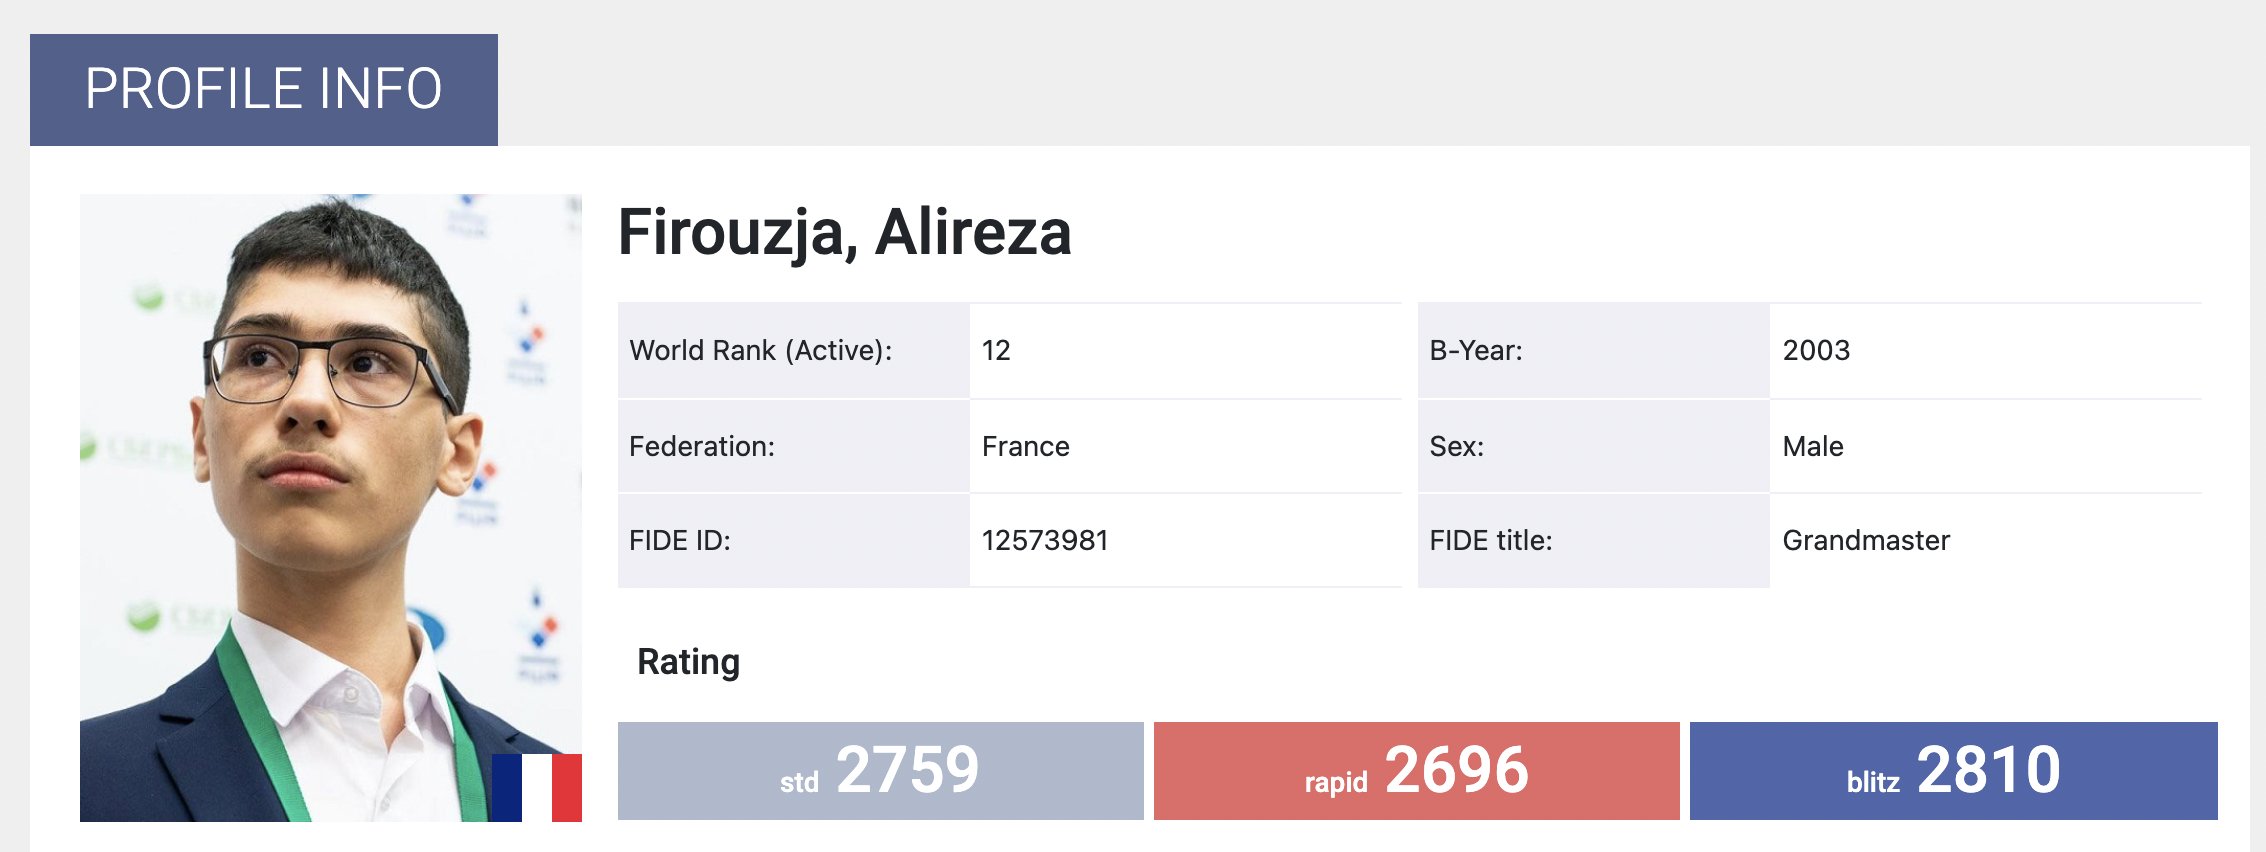 Alireza Firouzja to play for France